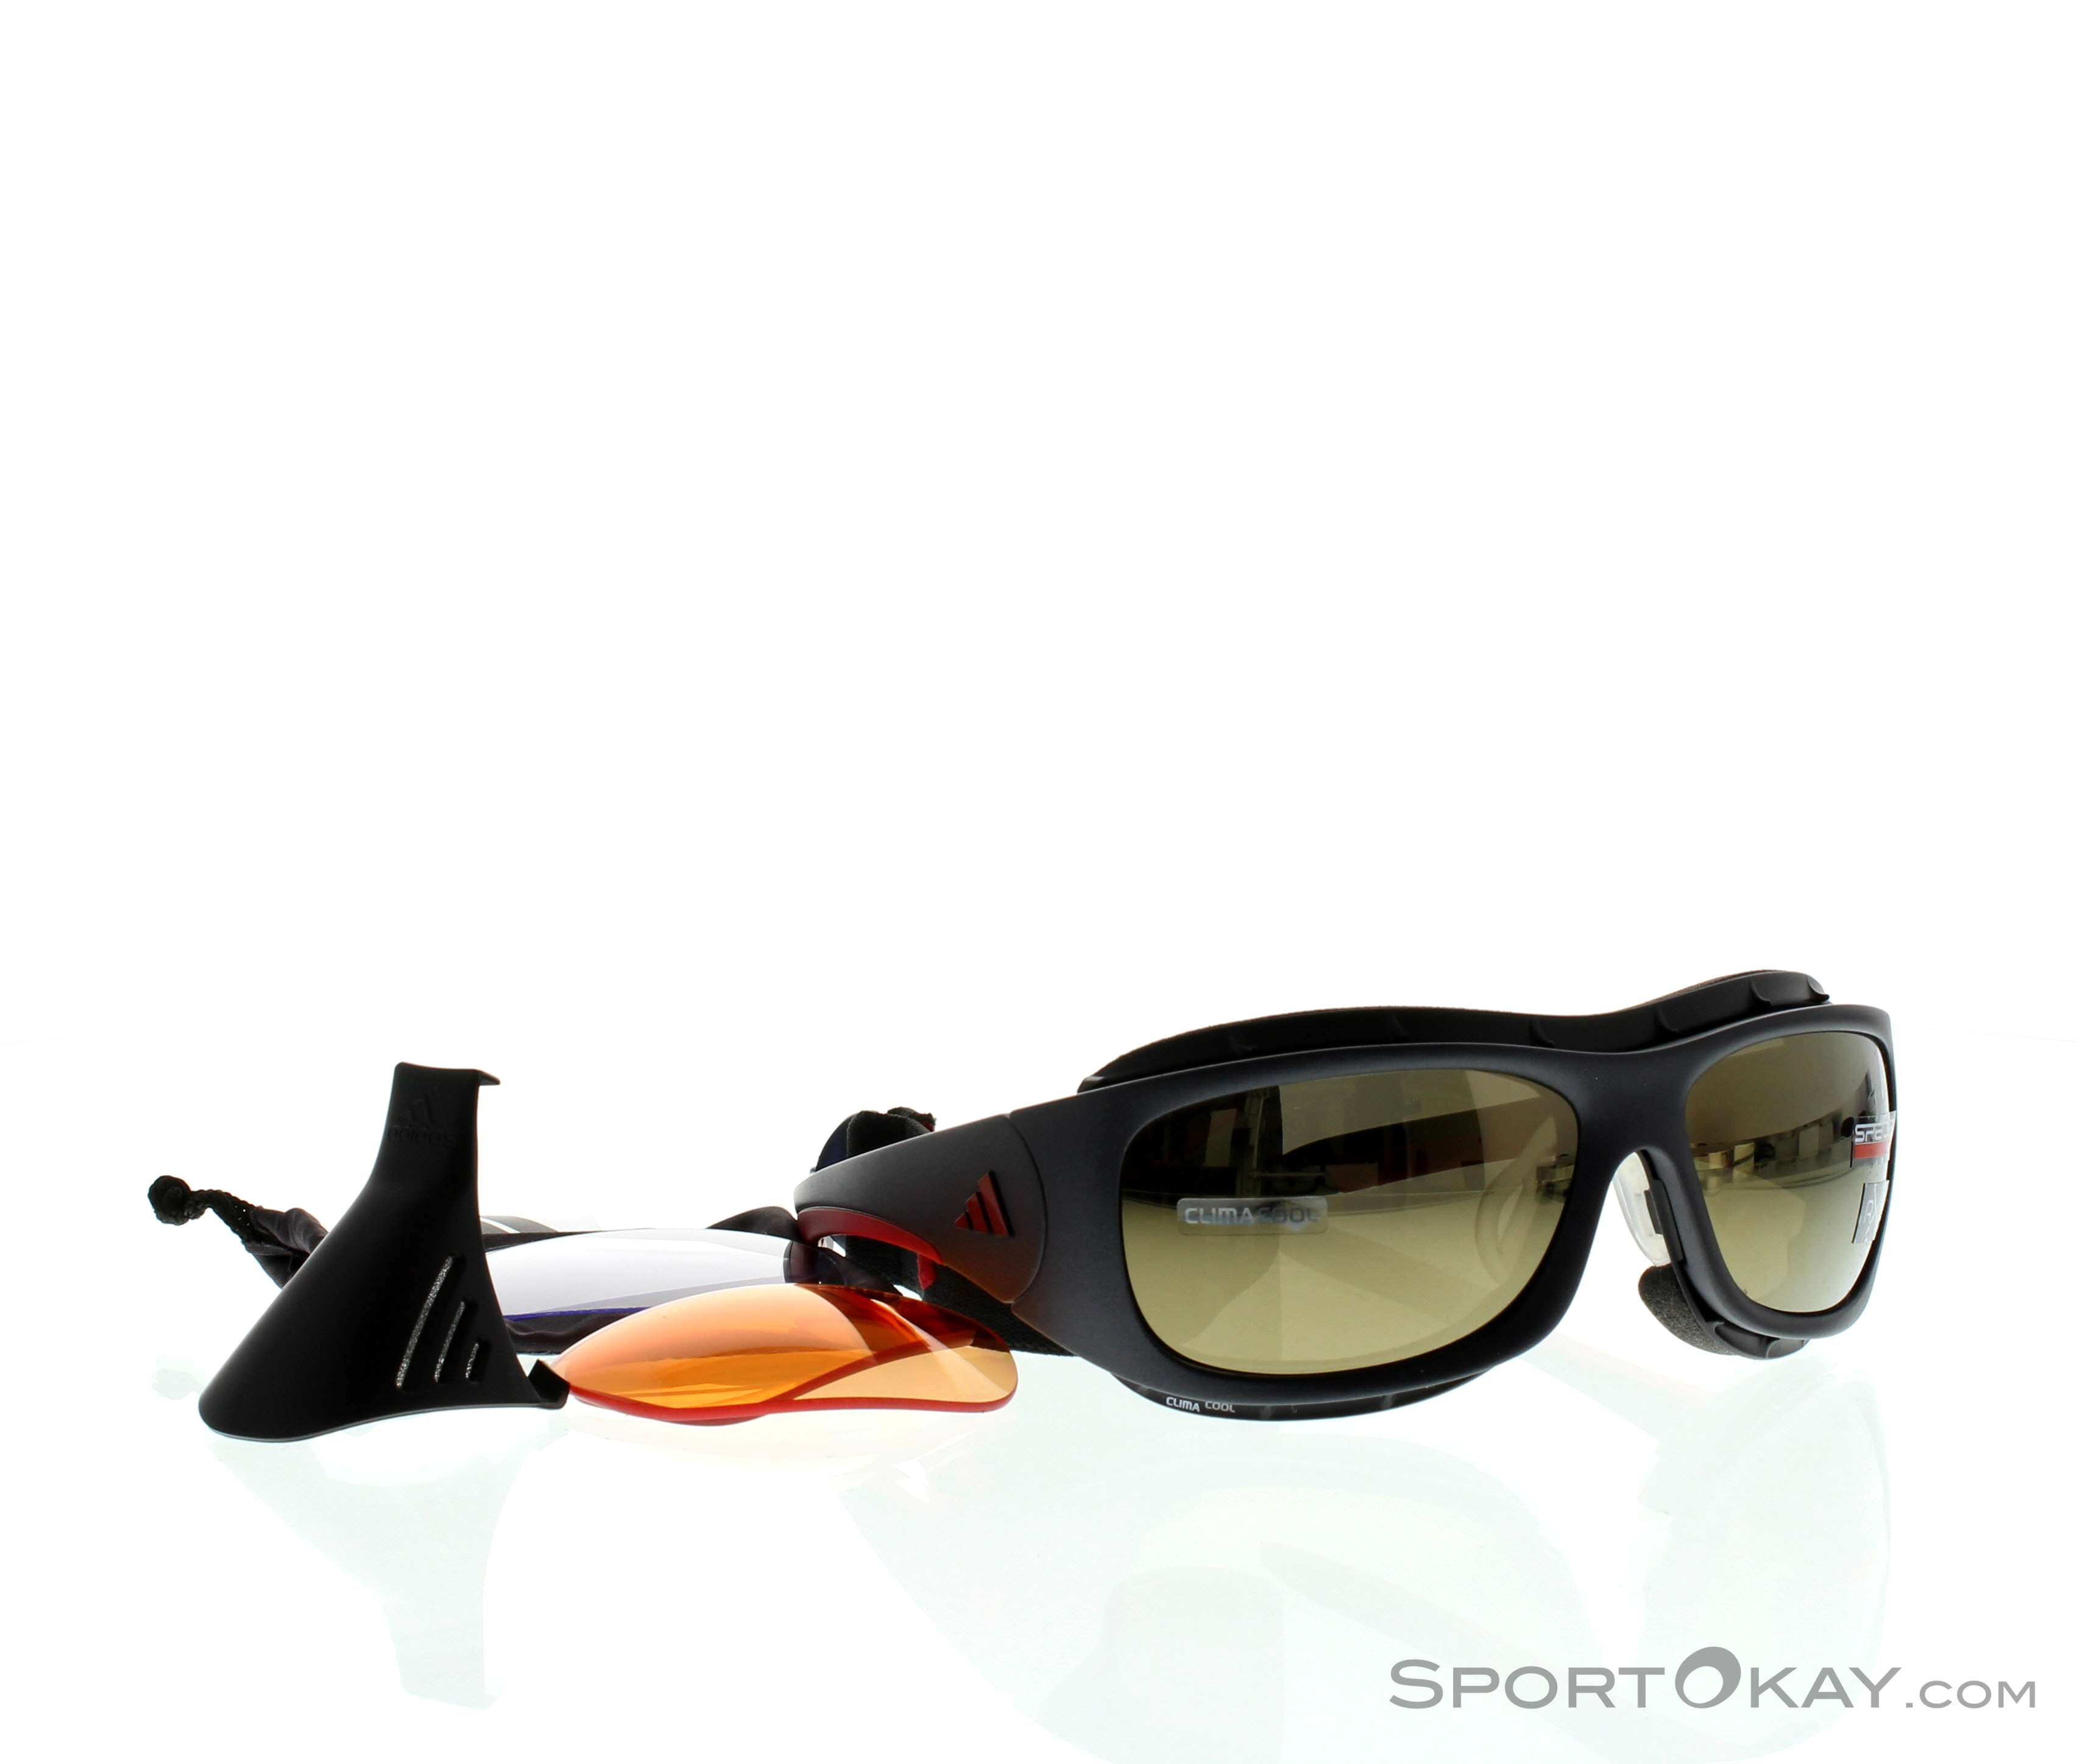 Pro Sonnenbrille - Sports Sunglasses - Fashion - All